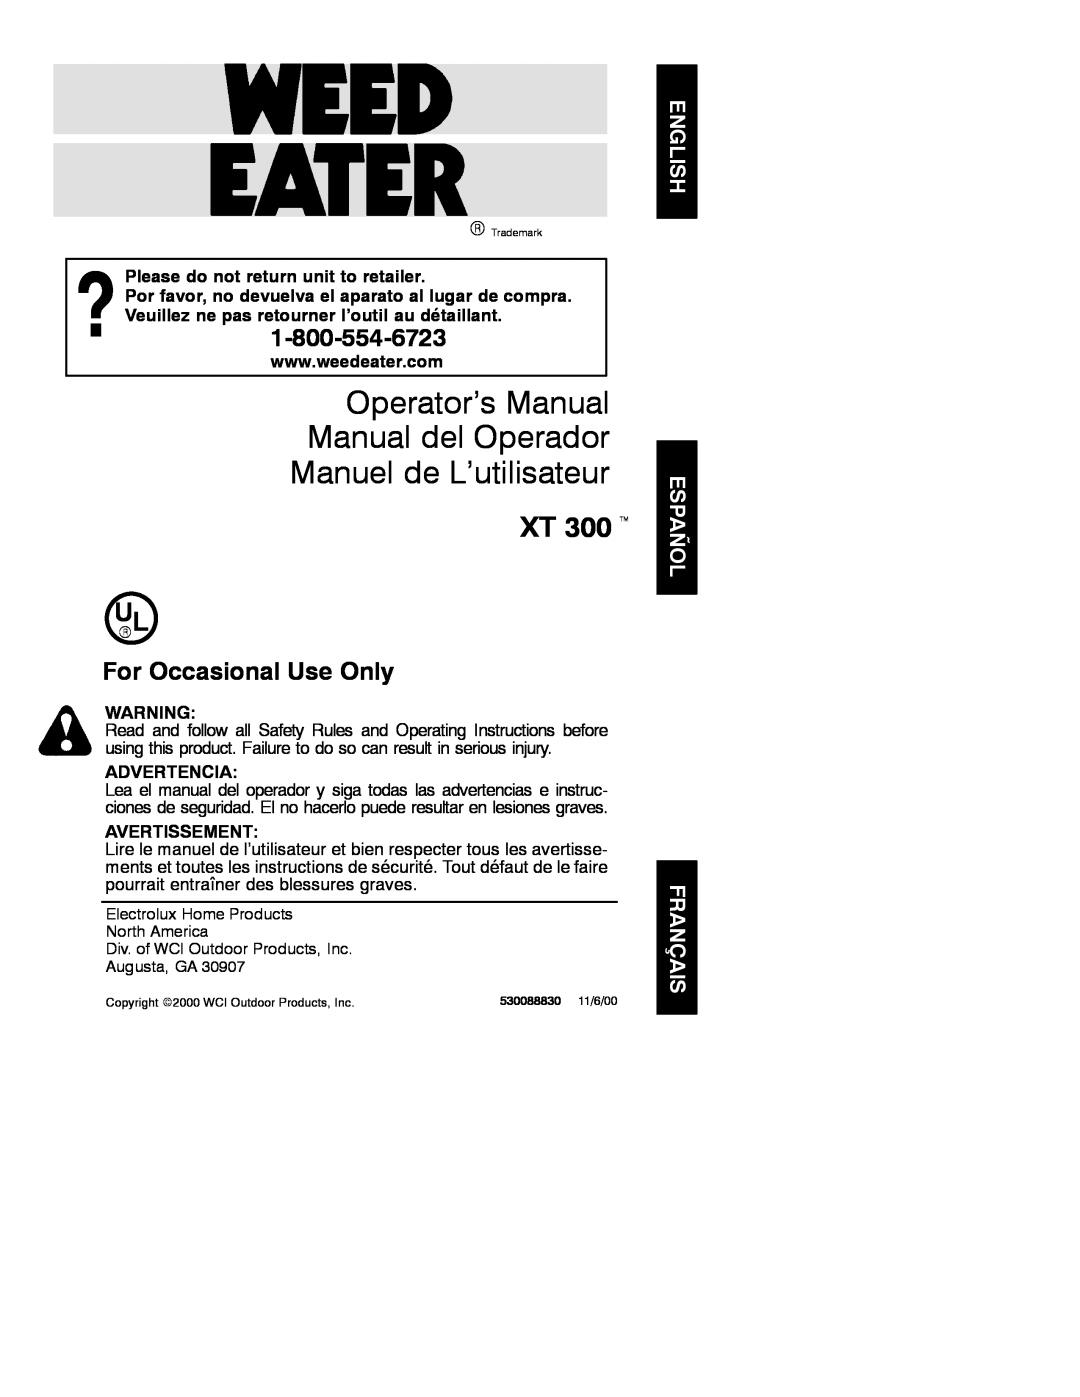 Weed Eater 530088830 operating instructions Operator’s Manual Manual del Operador, Manuel de L’utilisateur, XT 300 t 